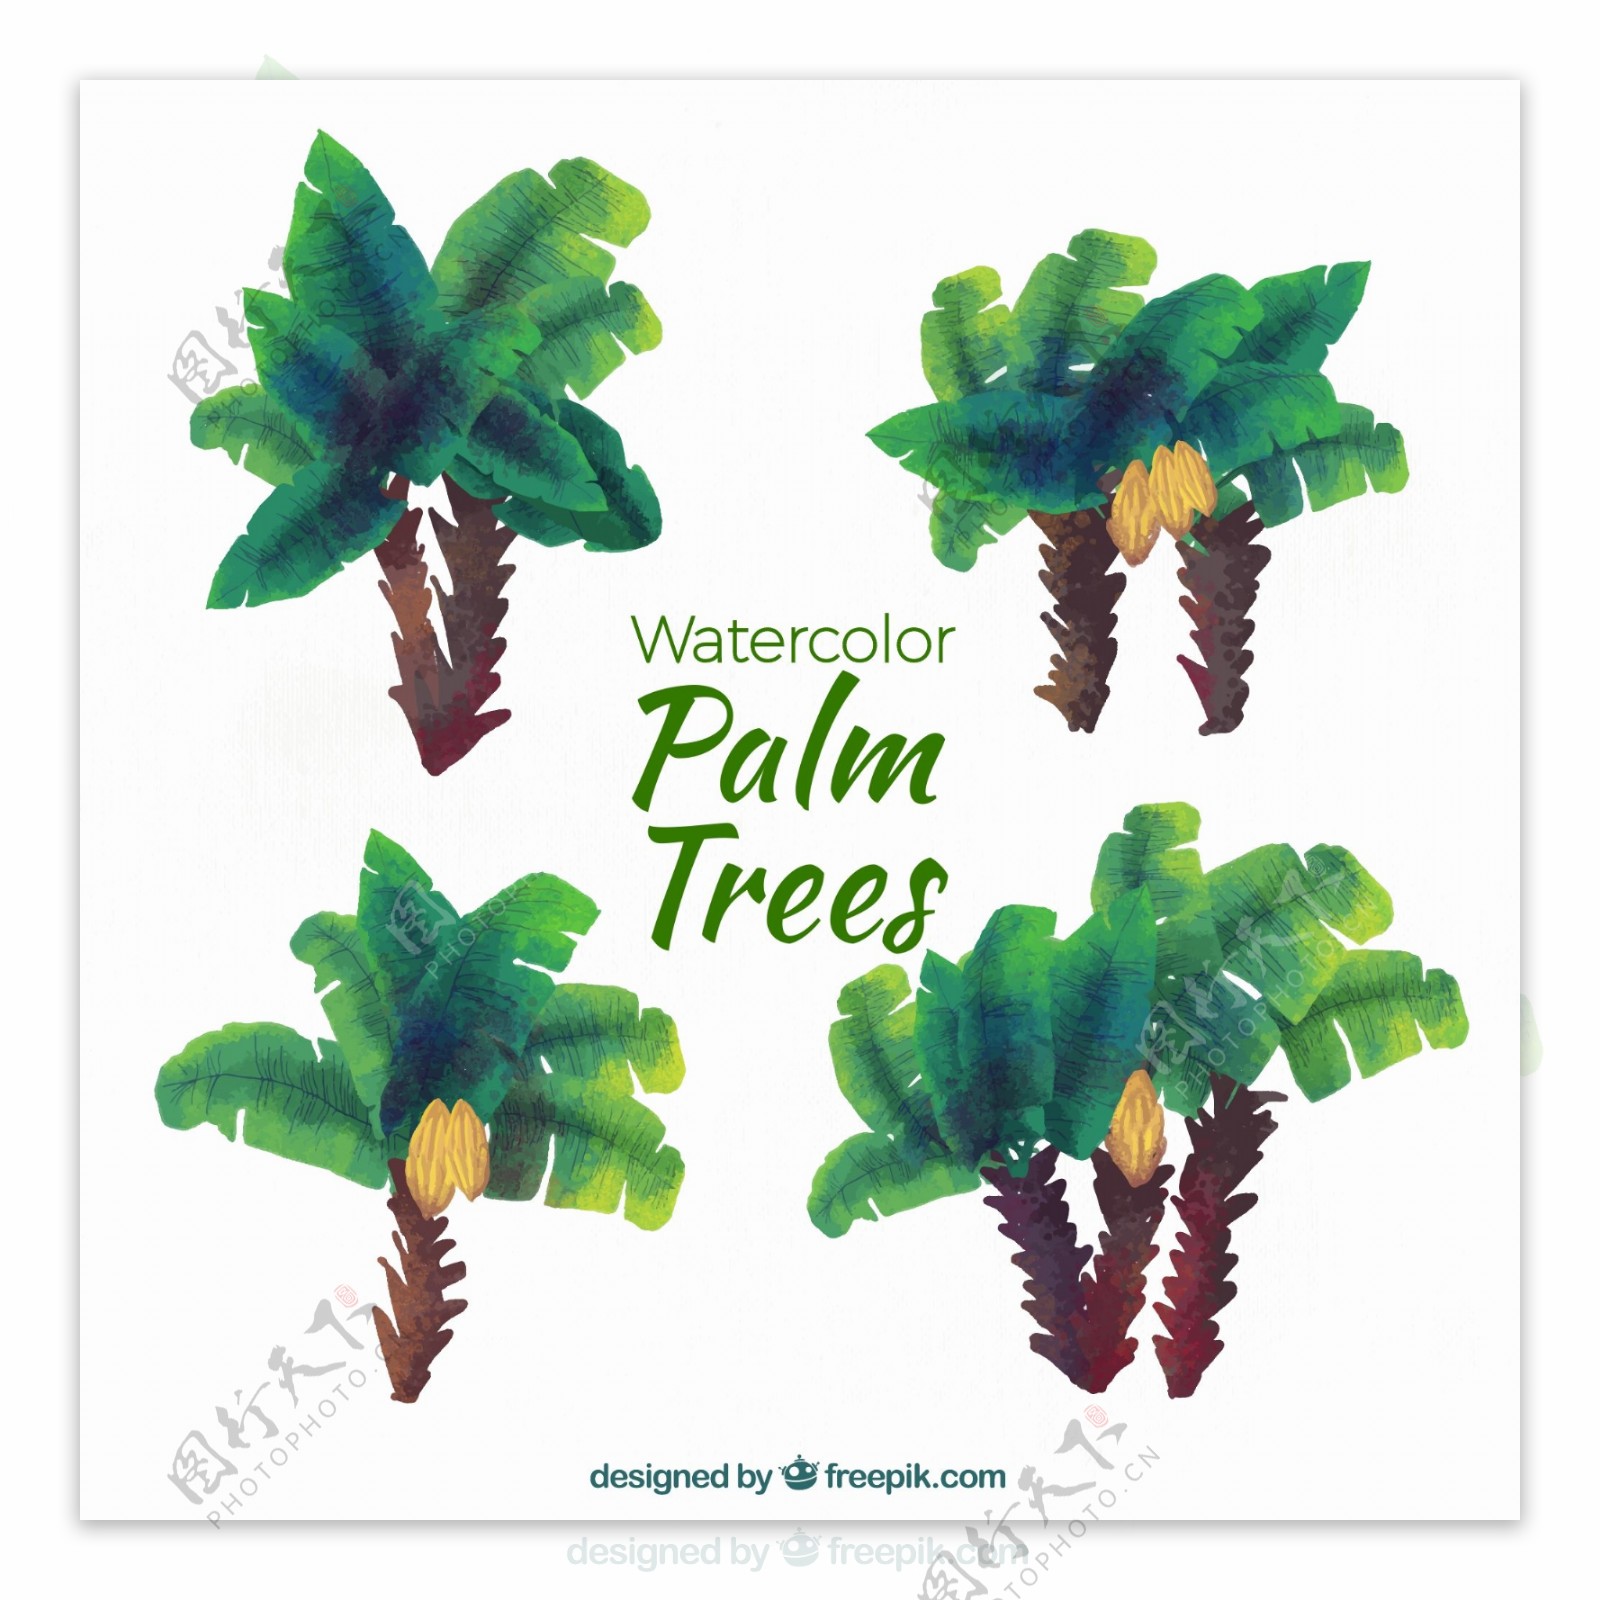 4款水彩绘绿色棕榈树矢量图